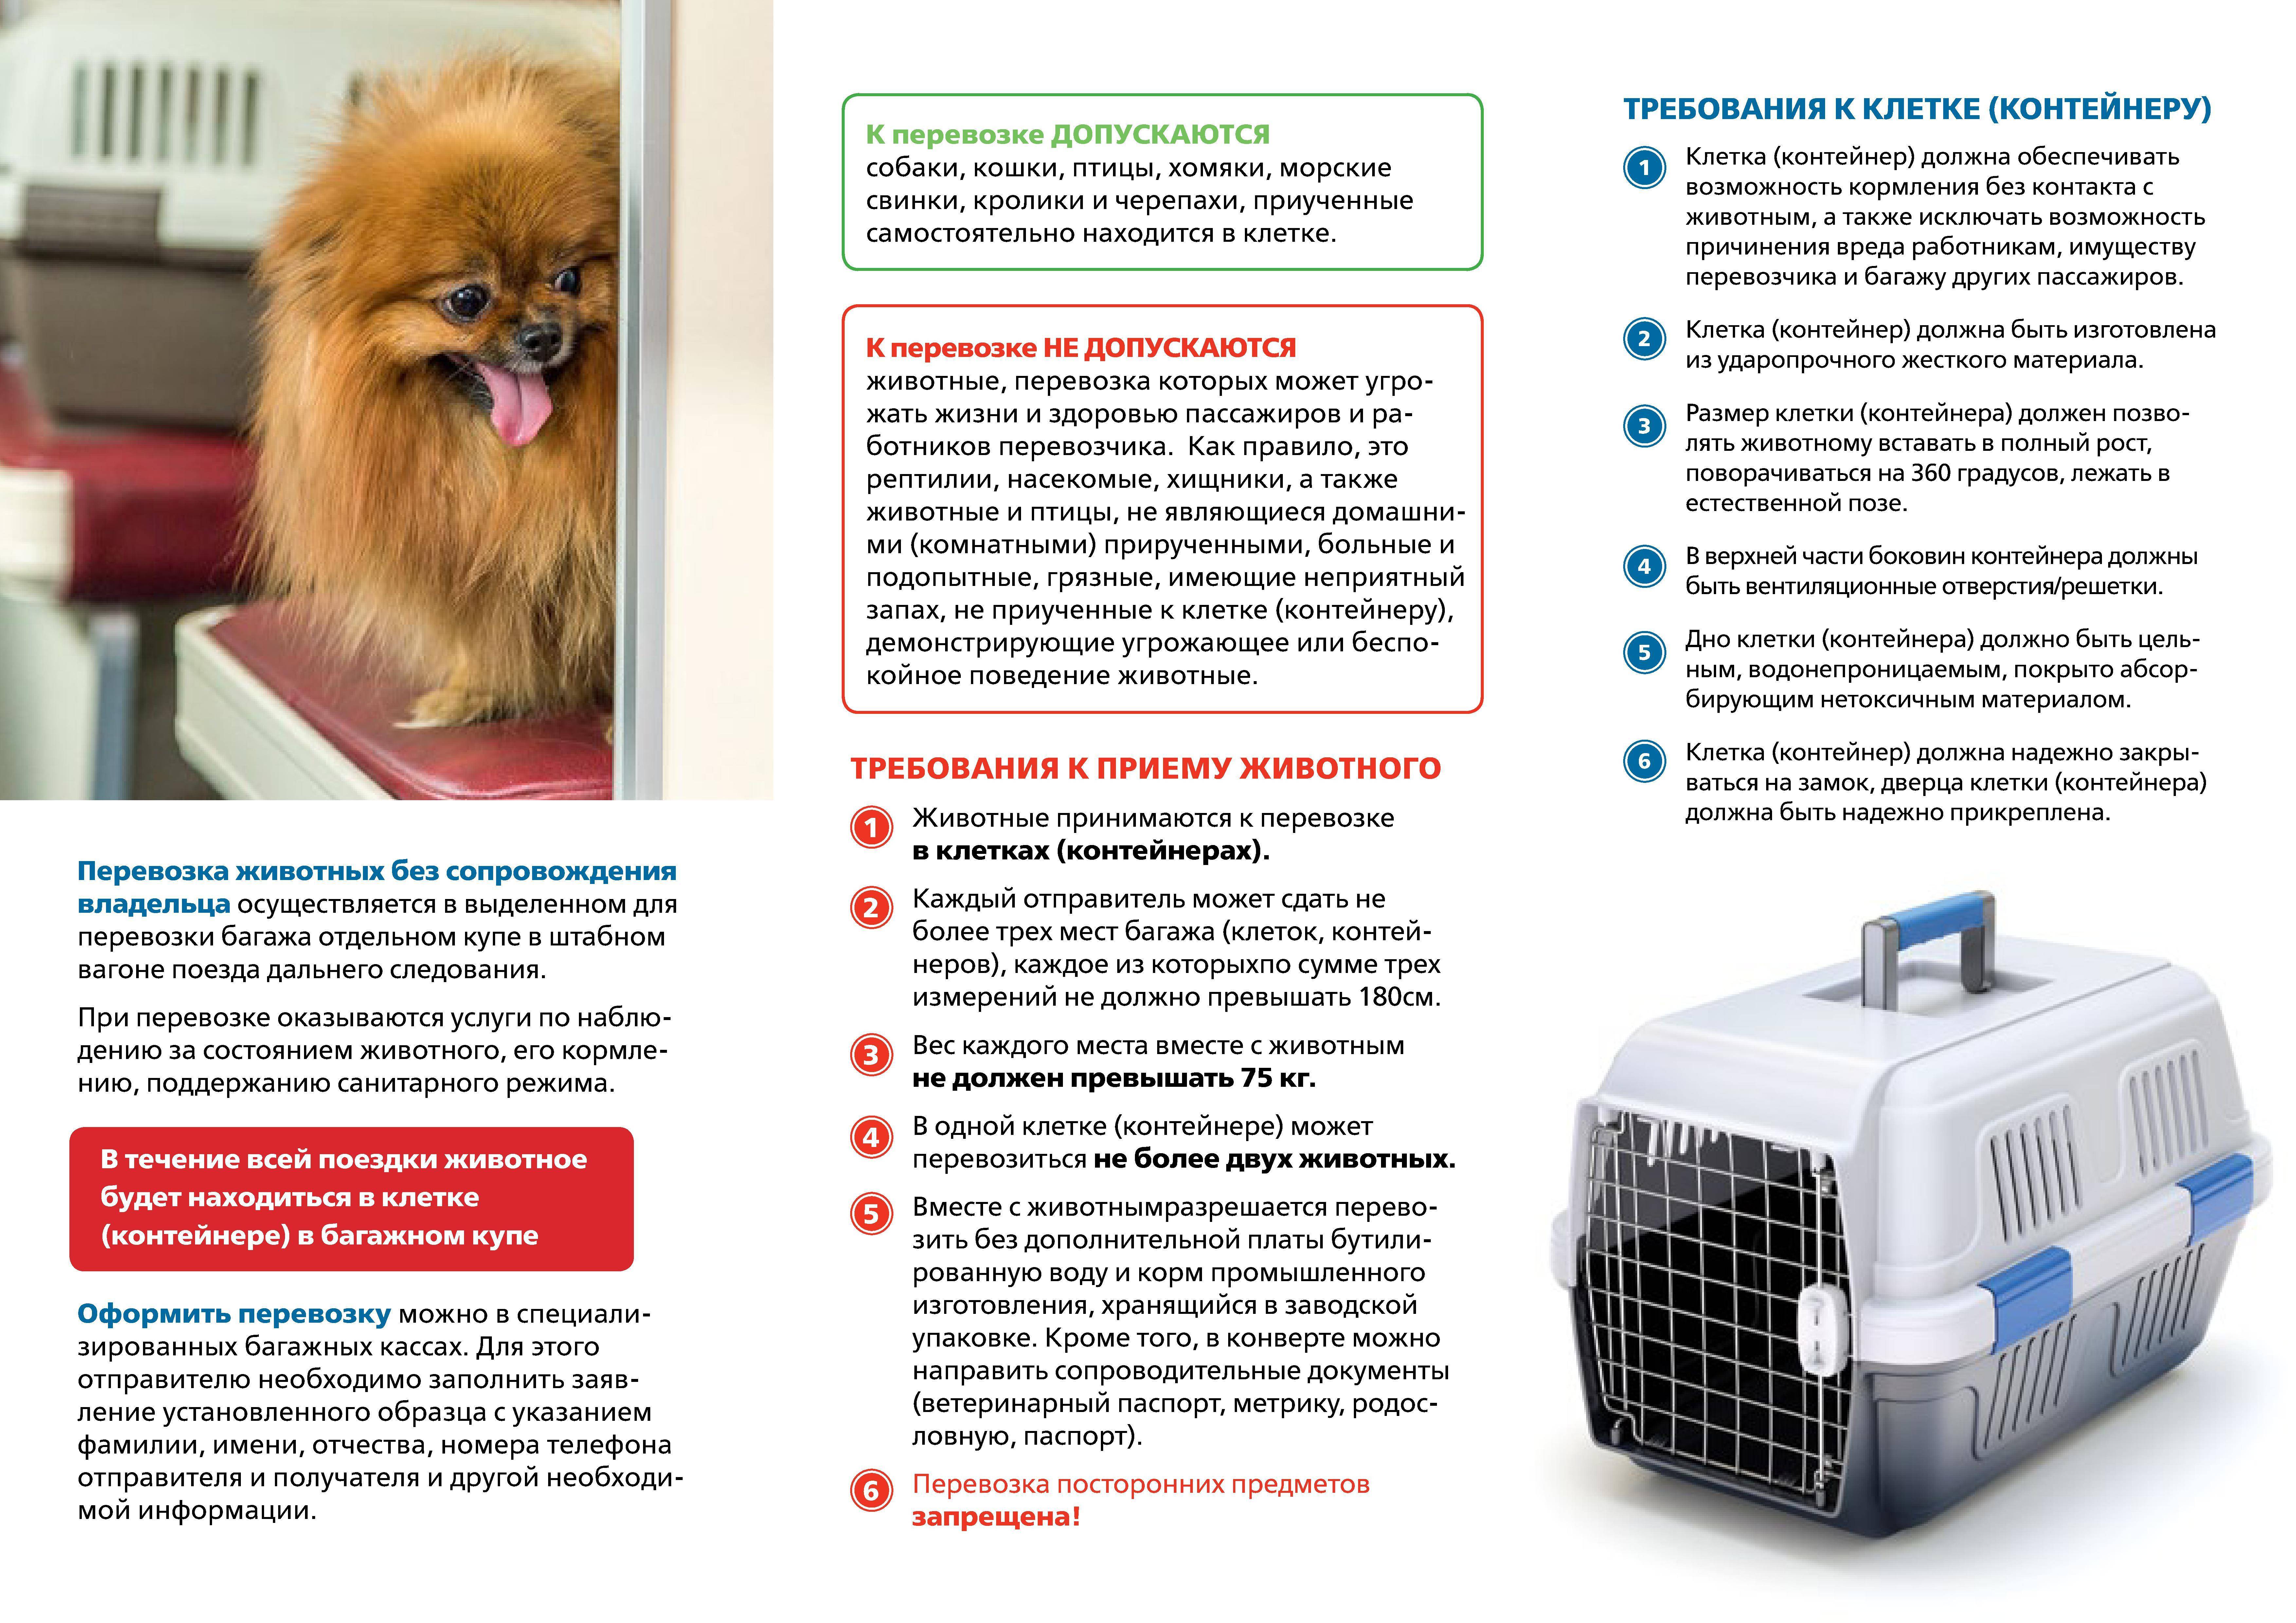 Правила перевозки собак в поезде по россии: как перевозить животных, какие нужны документы?